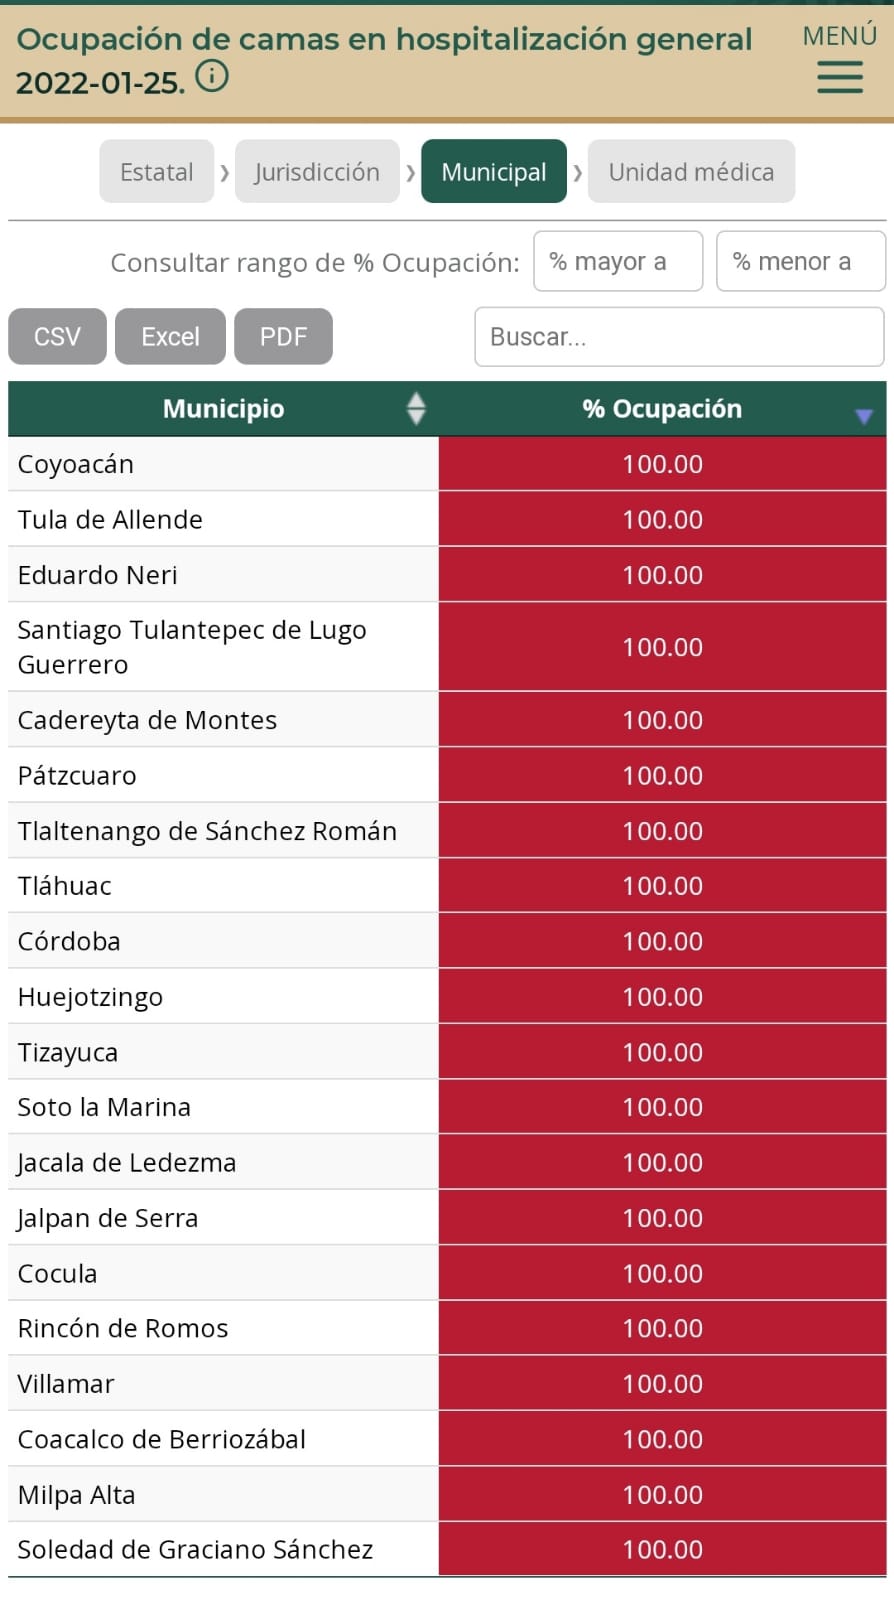 San Pedro Cholula, Huejotzingo y Acatlán, entre los municipios del país con elevada ocupación hospitalaria: Red Irag